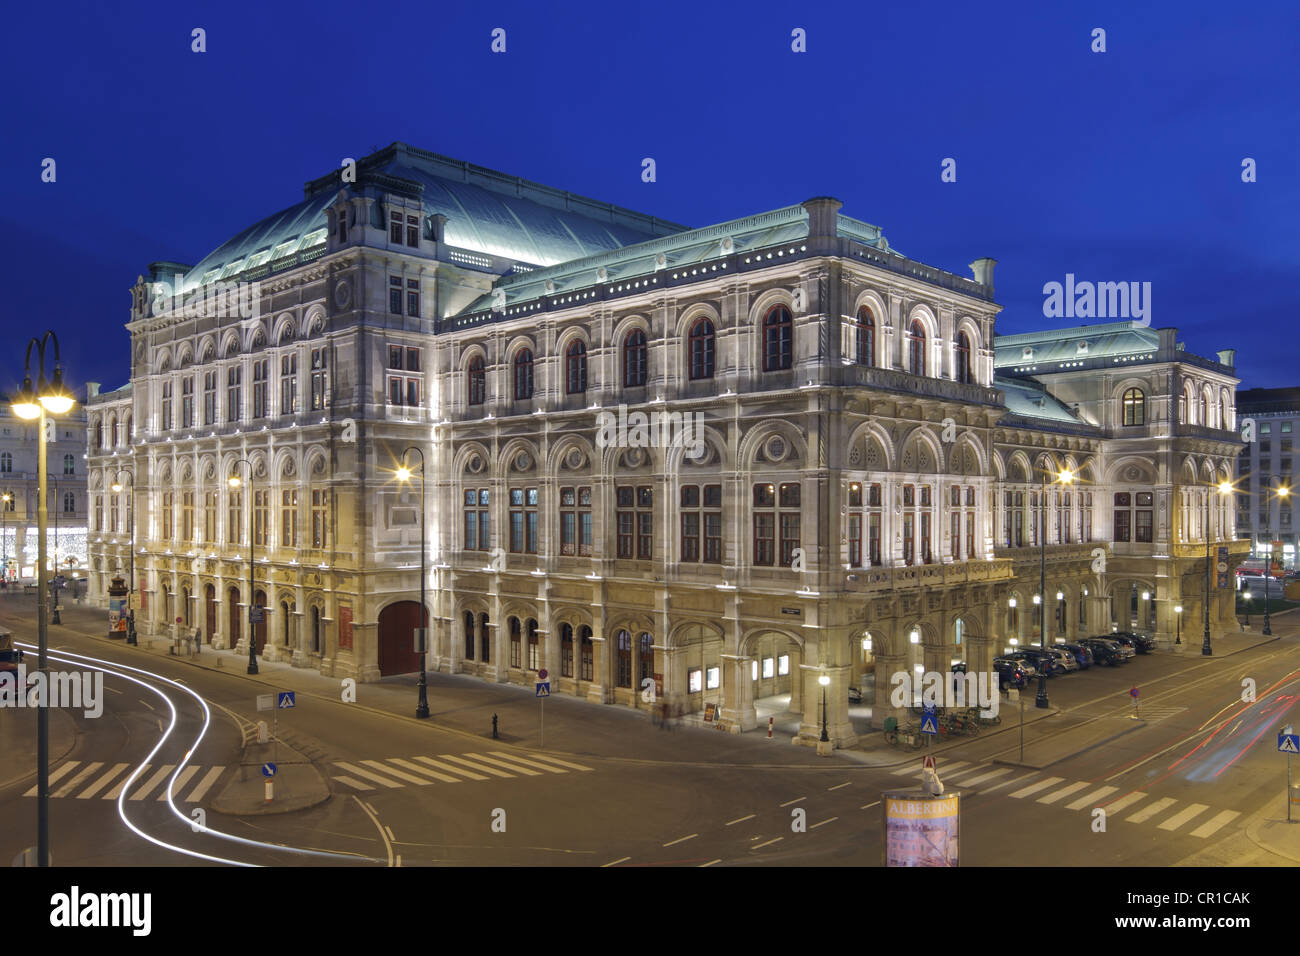 Vue arrière de l'Opéra national de l'Albertinarampe, Vienne, Autriche, Europe Banque D'Images